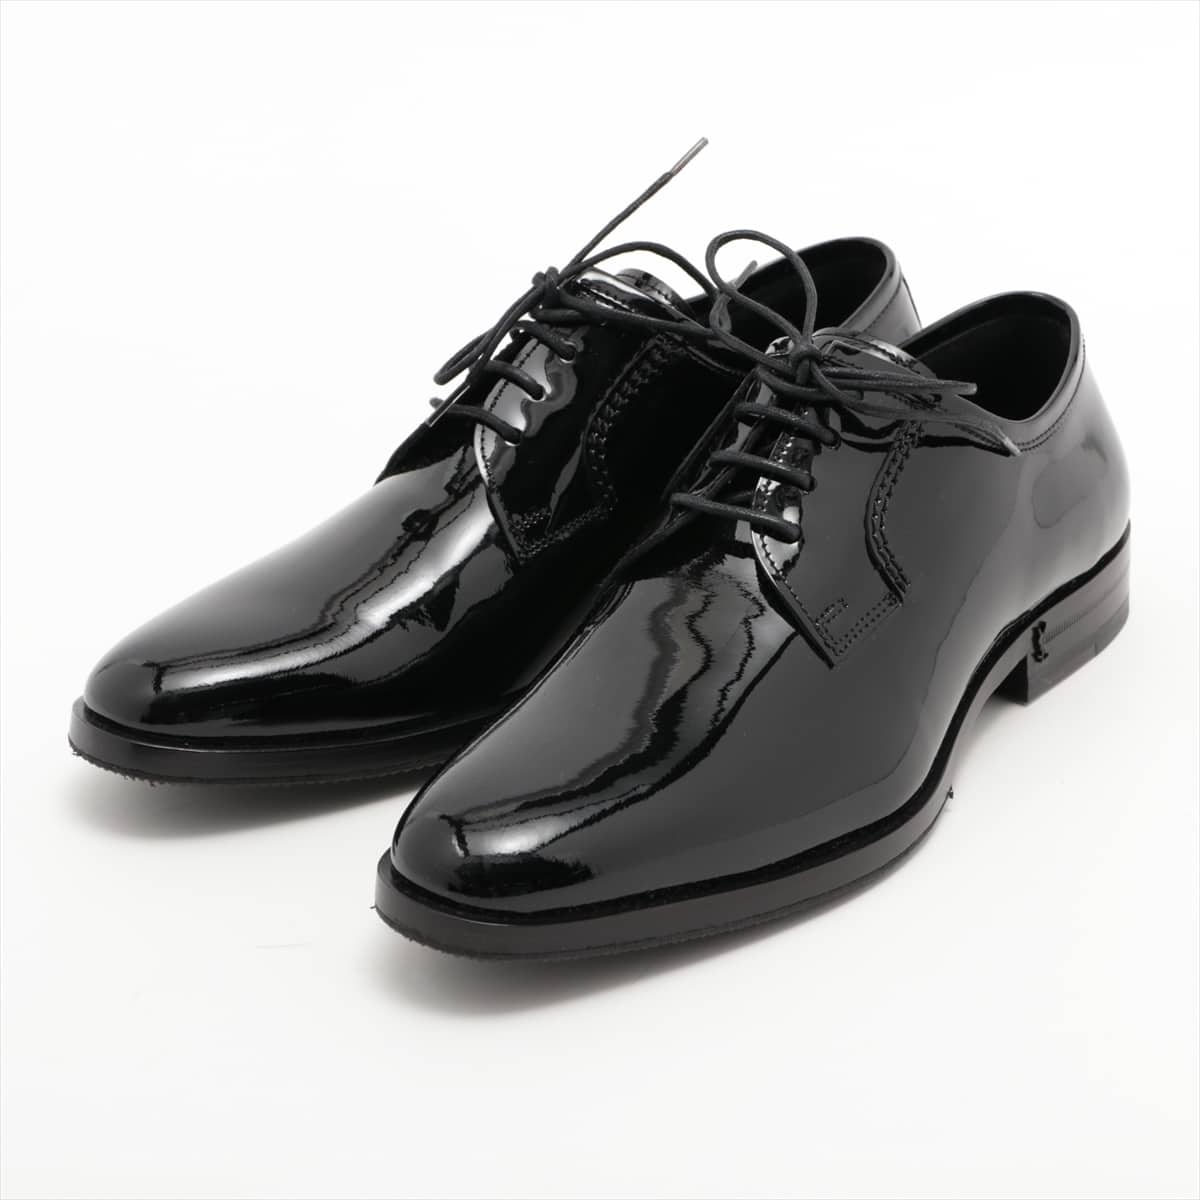 Saint Laurent Paris Patent leather Dress shoes 38 Ladies' Black Lace up